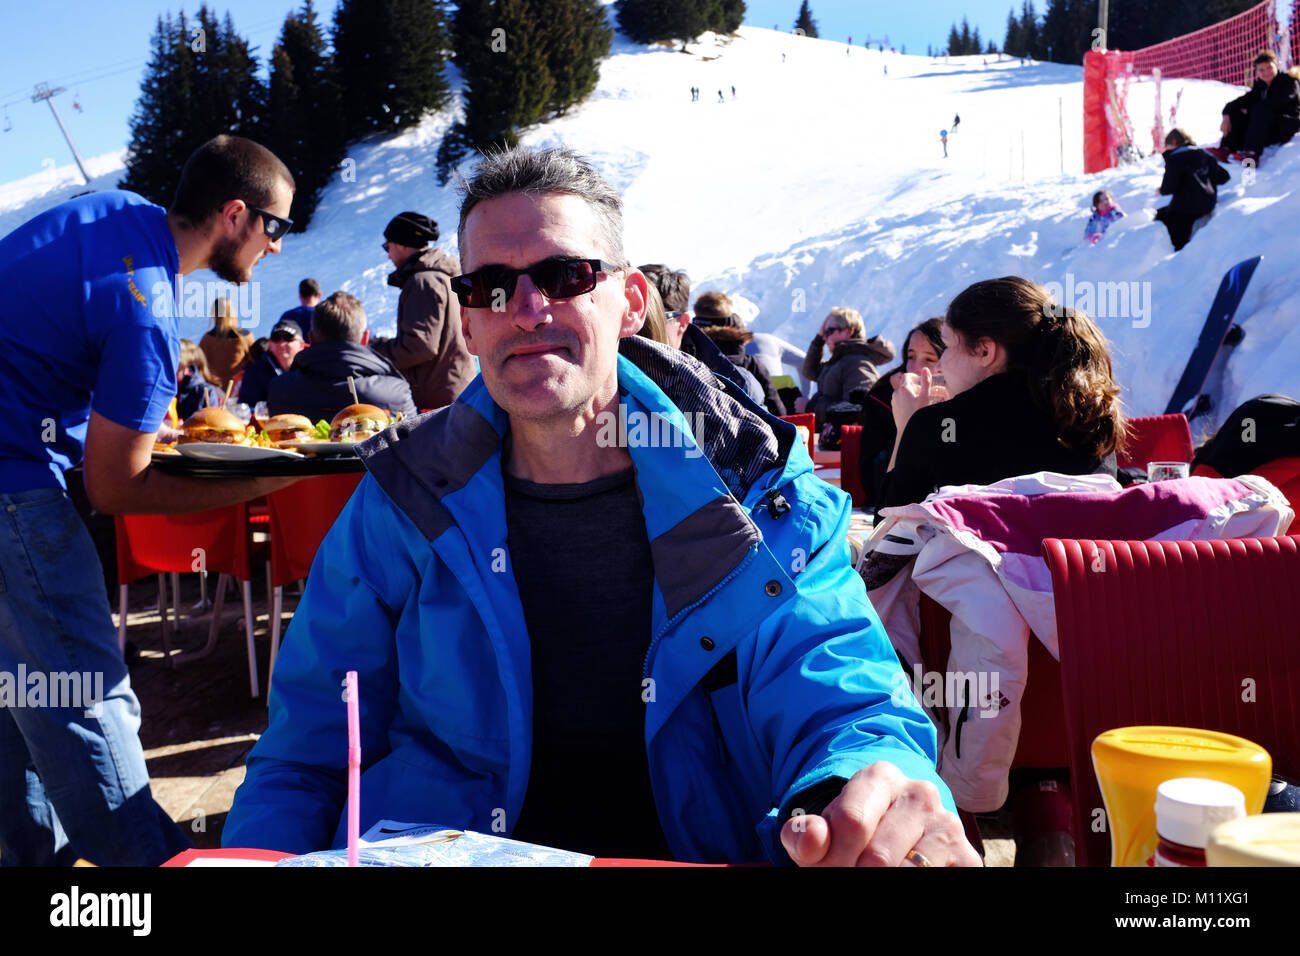 Eating in an outside ski resort restaurant on a sunny day, Samoens France Stock Photo